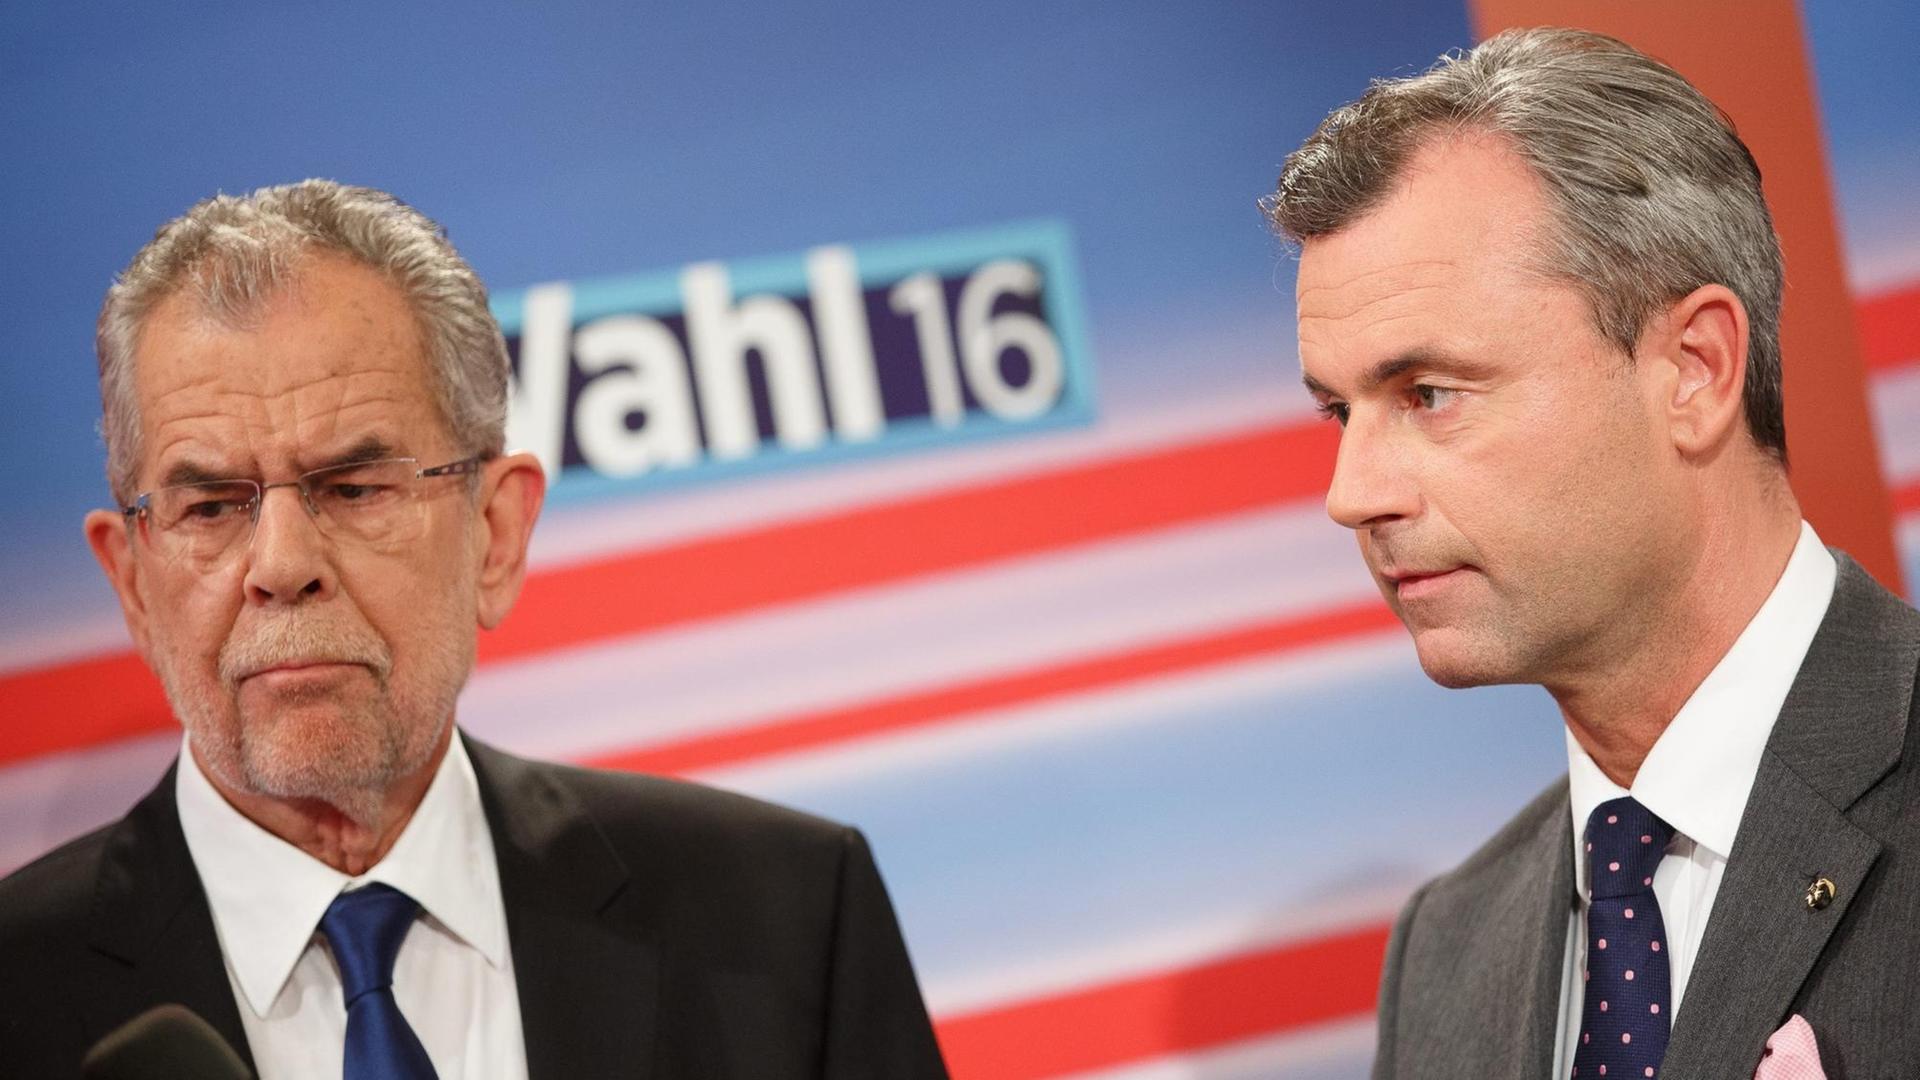 Österreichs jetziger Bundespräsident Alexander Van der Bellen und der Wahlverlierer Norbert Hofer von der rechtspopulistischen FPÖ während einer Wahlsondersendung im Fernsehen.